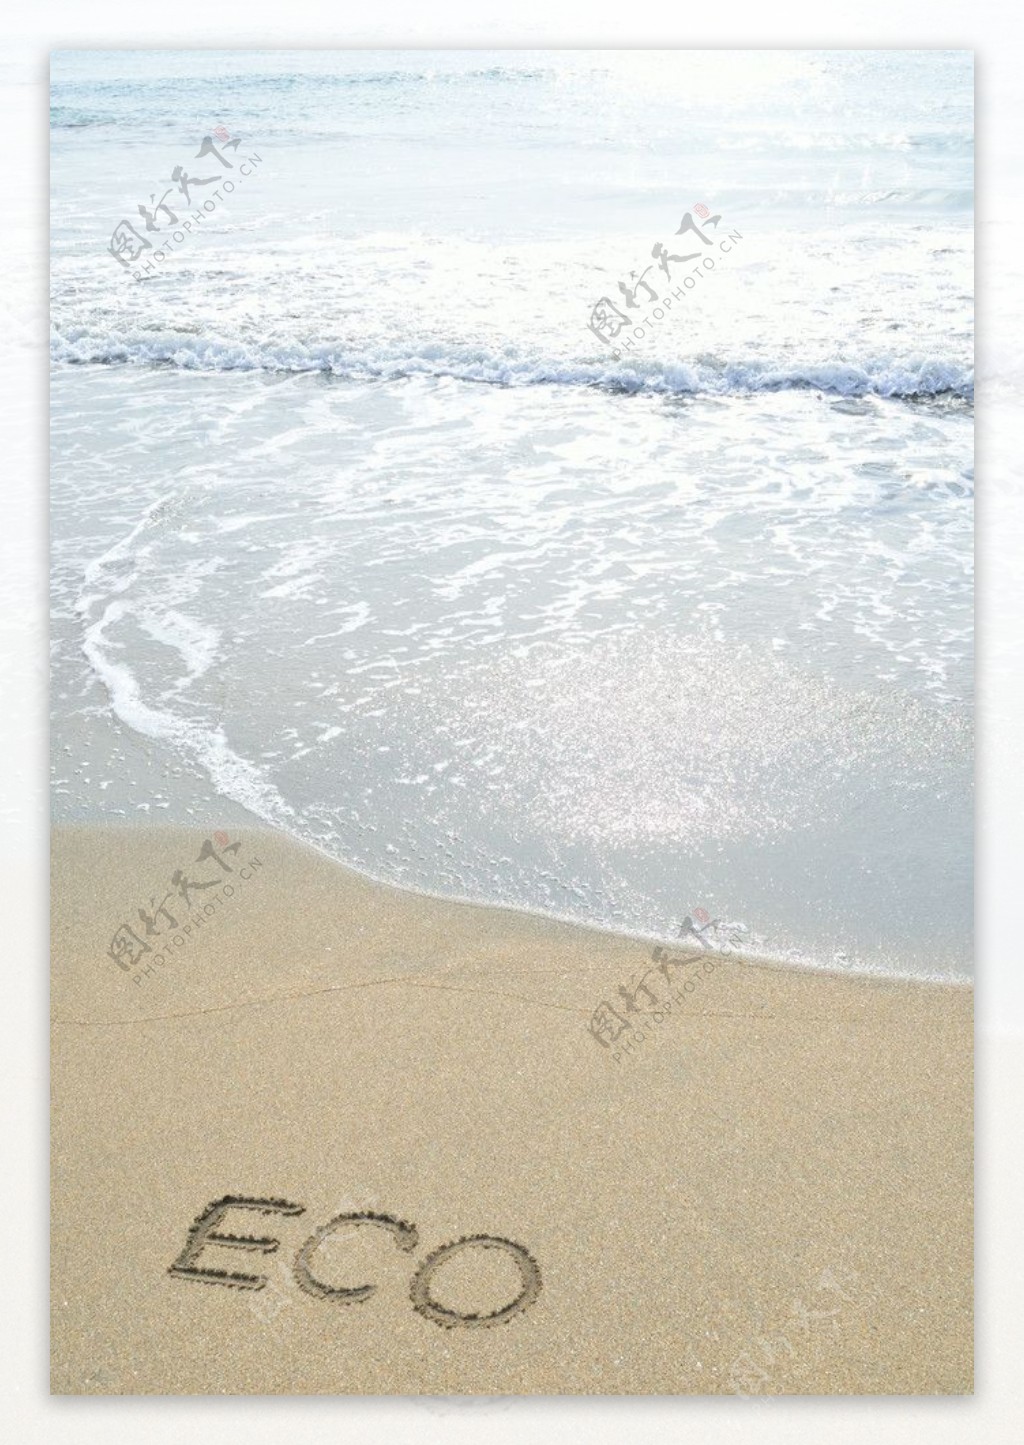 沙滩海滩eco环保标志图片